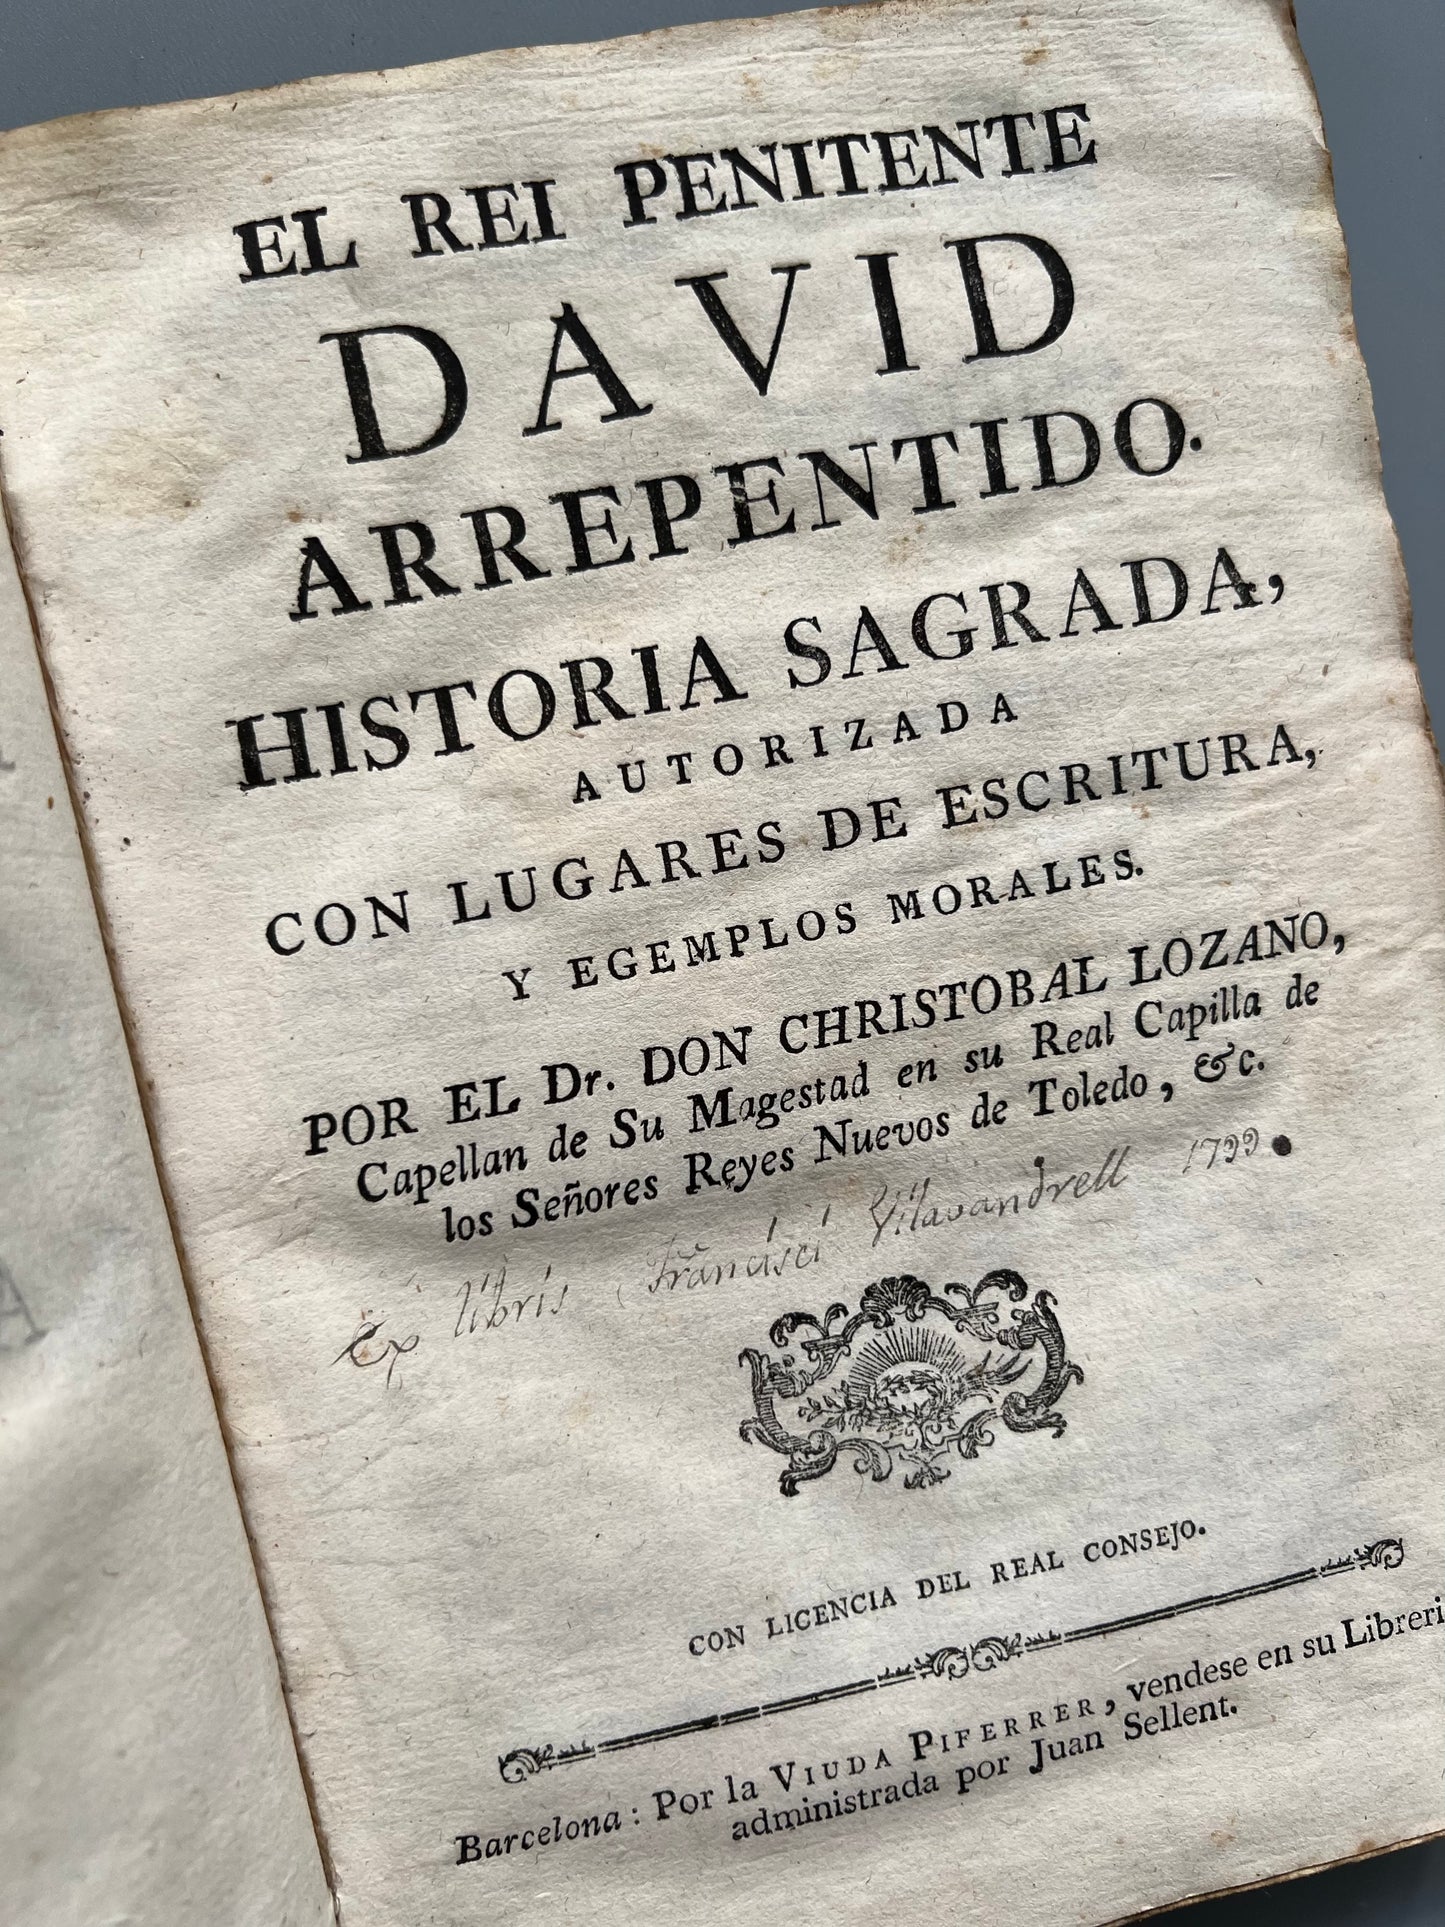 El rey penitente David arrepentido, Christobal Lozano - Librería de la viuda Piferrer, ca. 1733